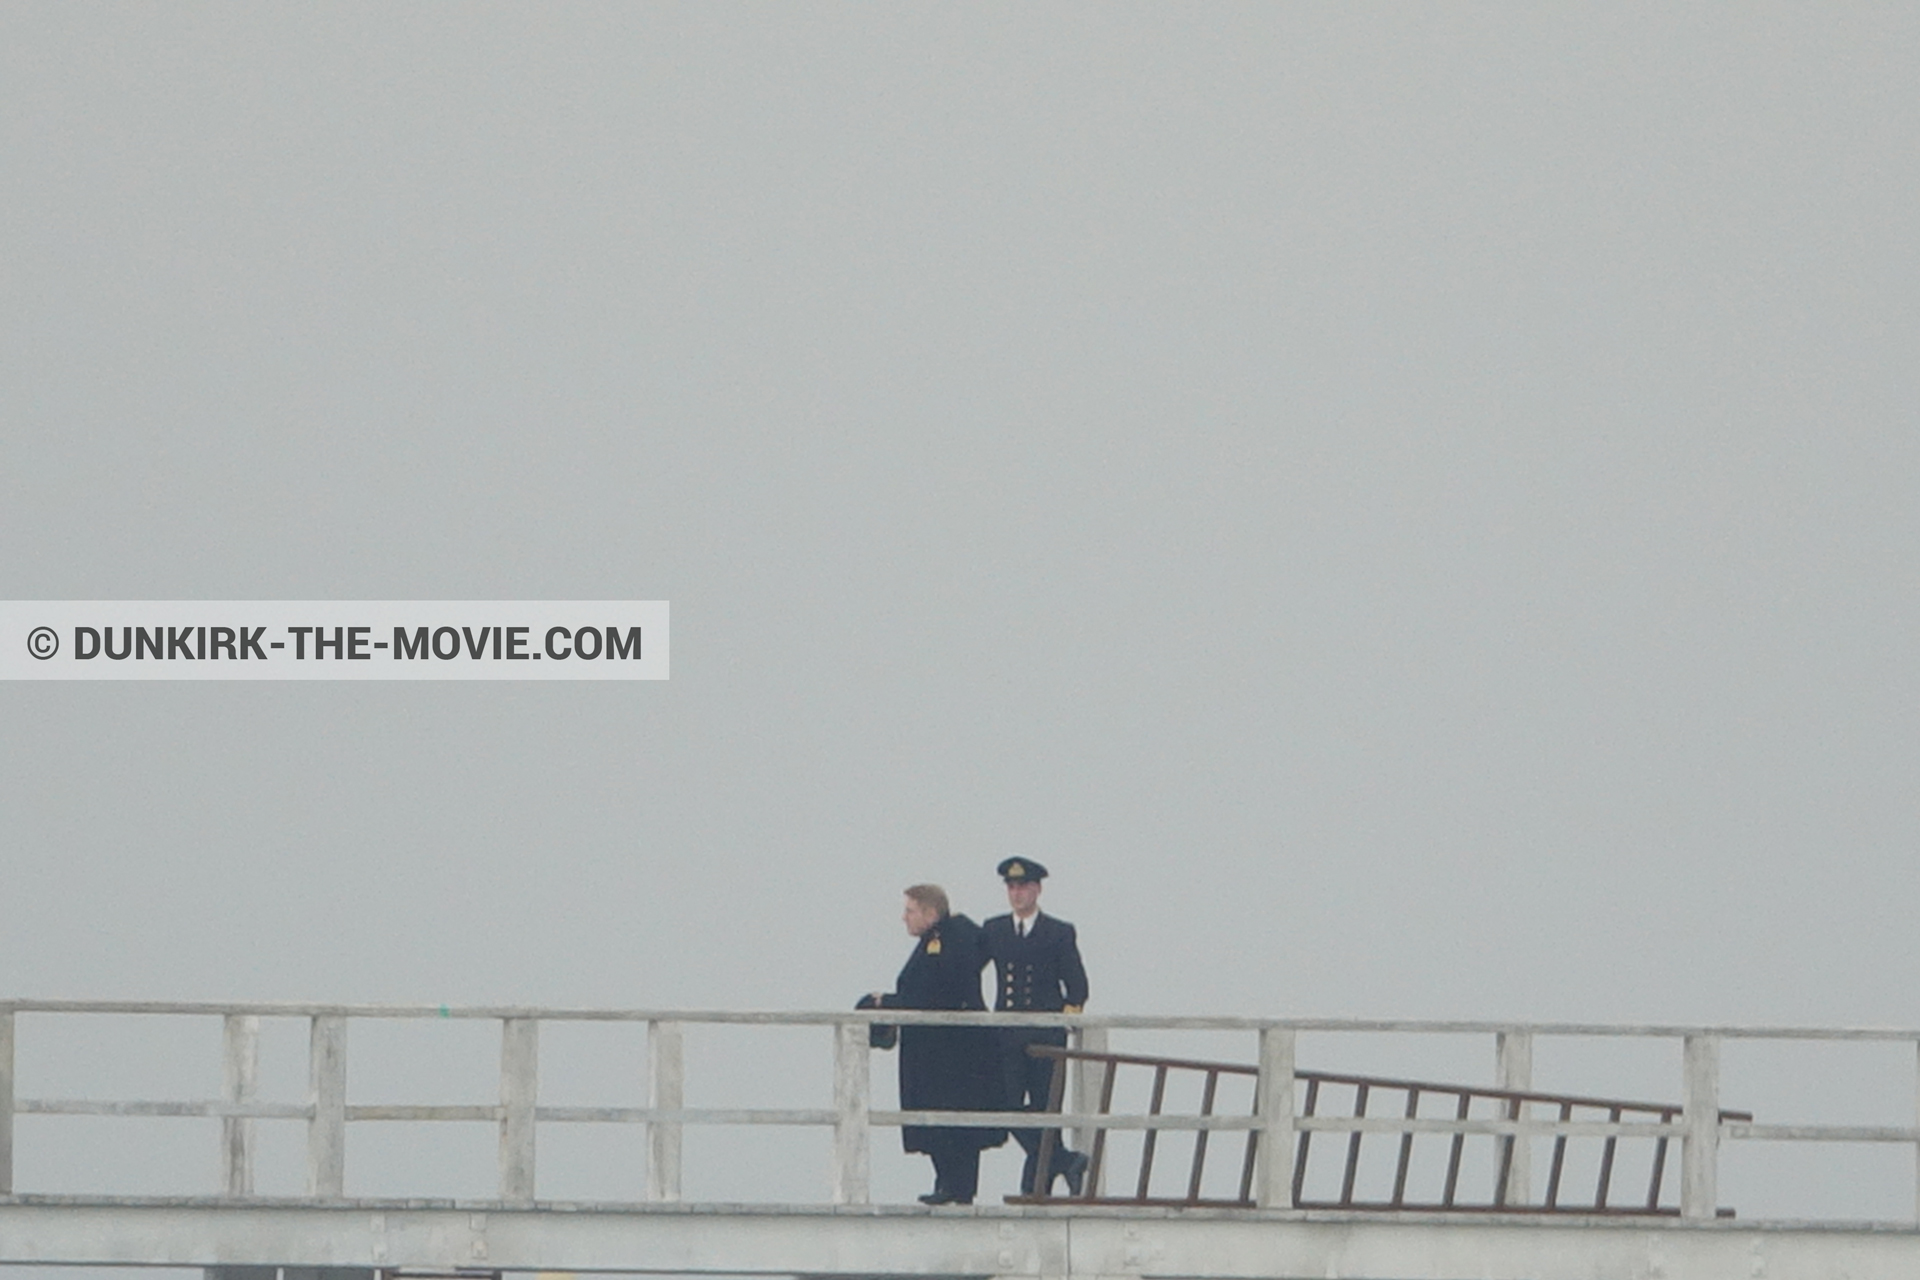 Photo avec acteur, ciel gris, jetée EST, Kenneth Branagh,  des dessous du Film Dunkerque de Nolan